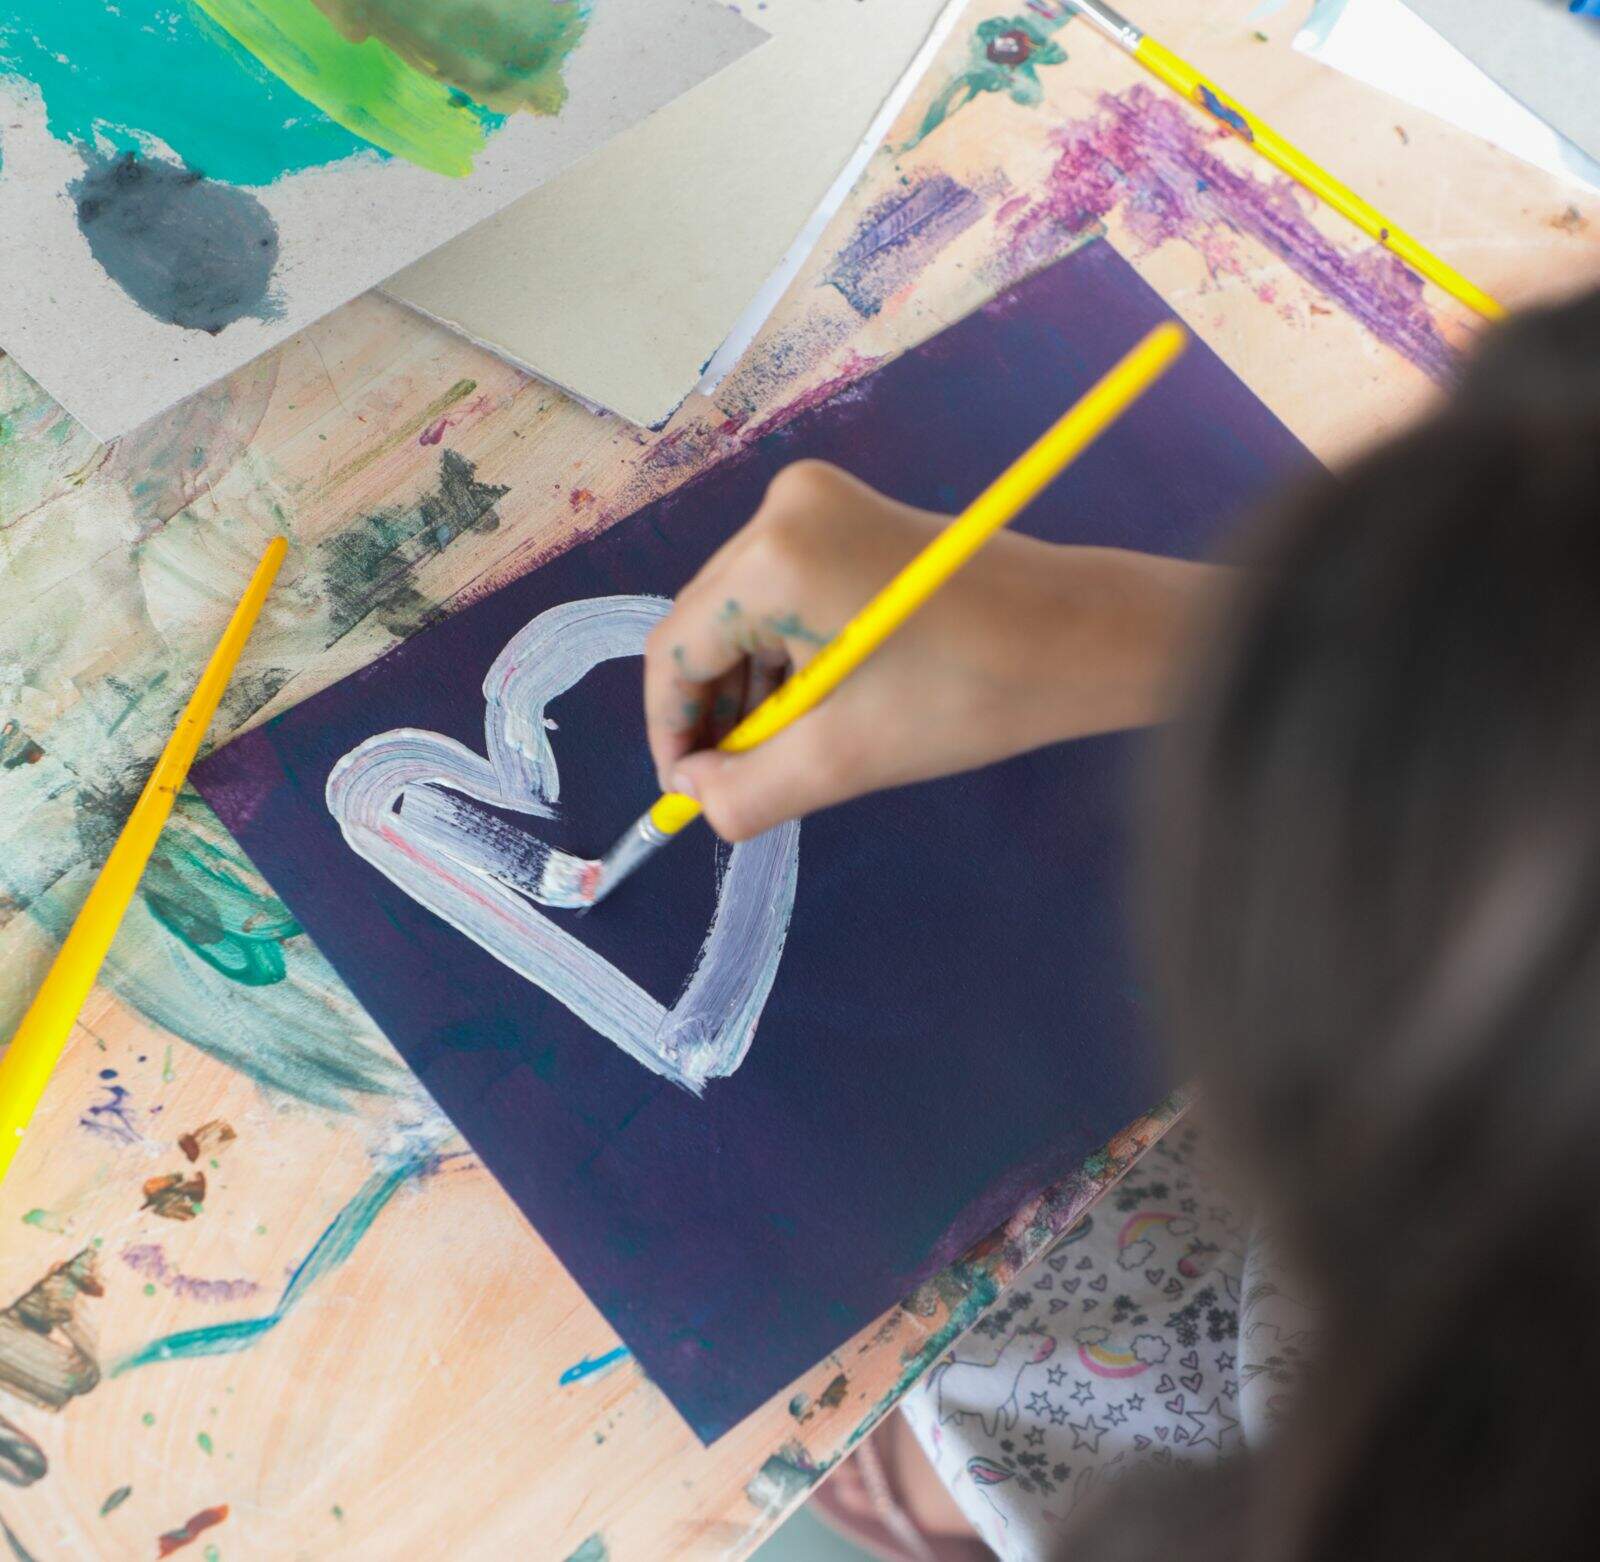 Imagem mostra uma criança de costas no canto da imagem pintando em um papel preto. O foco da fotografia esta principalmente na pintura da menina. É um coração branco em uma folha preta.